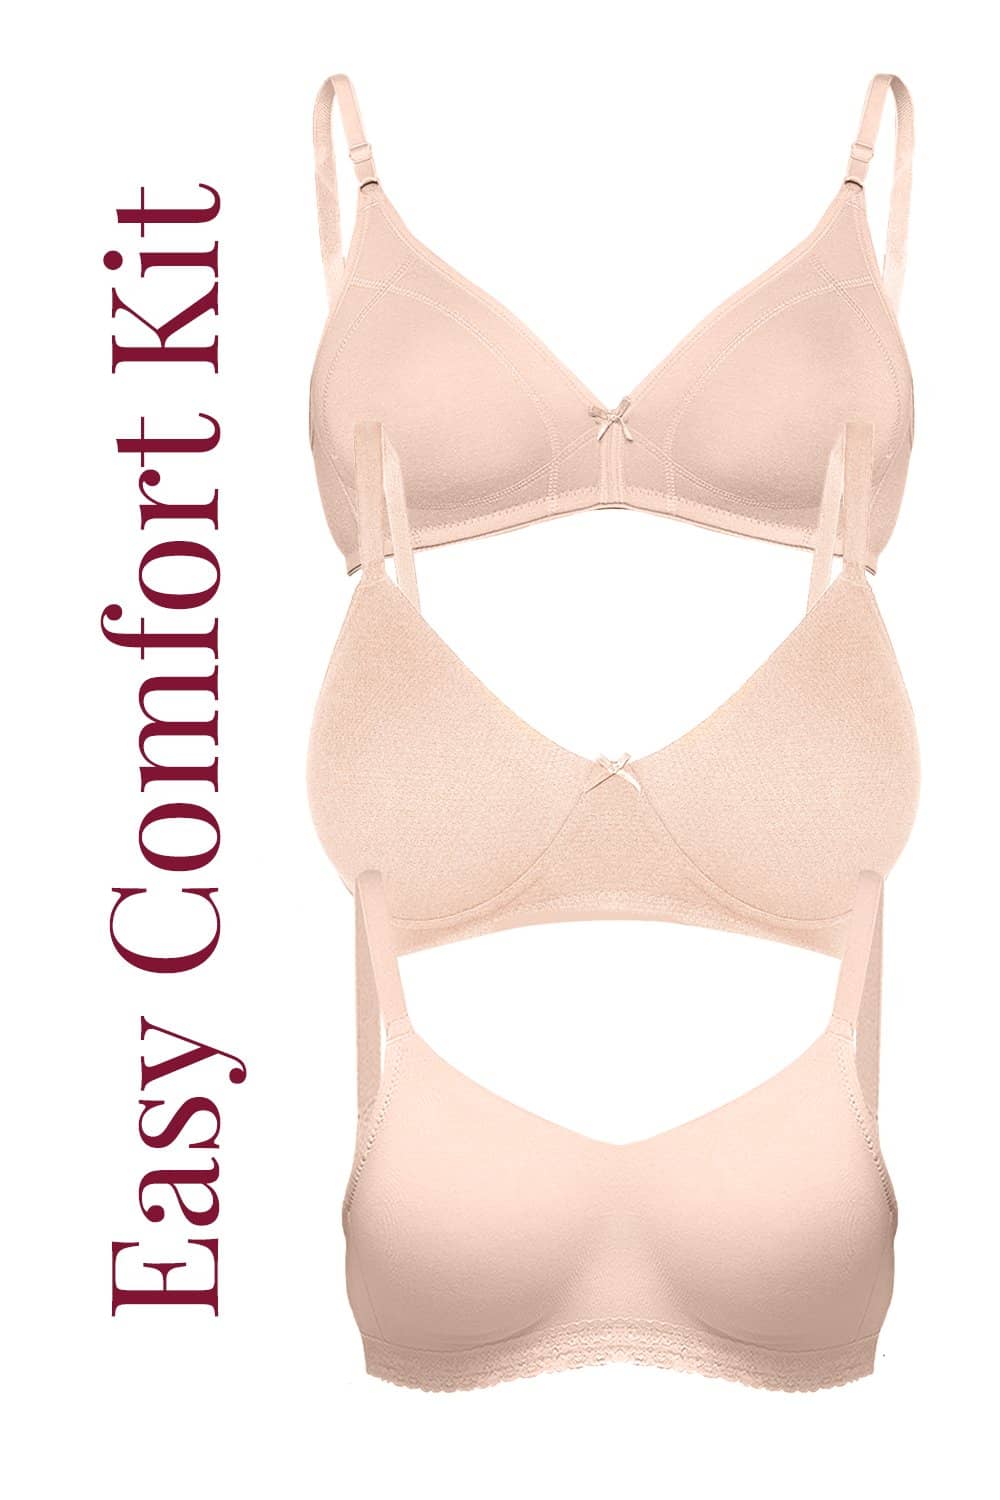 ISBK02-Skin-Buy Online Inner Sense Organic Cotton Easy Comfort Kit